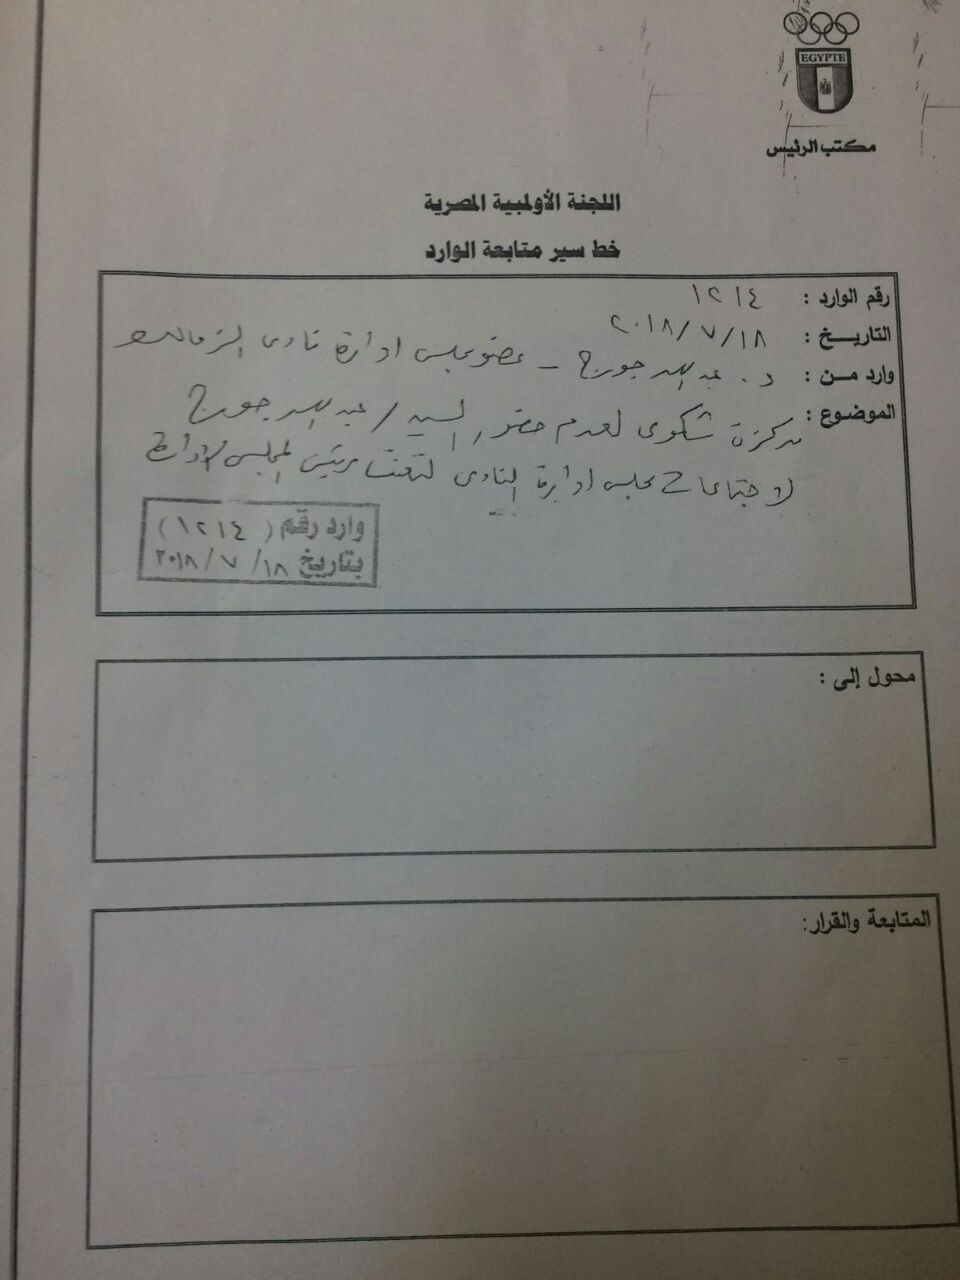 المذكرة التى رد عليها عبد الله جورج بشأن عدم حضوره اجتماعات المجلس